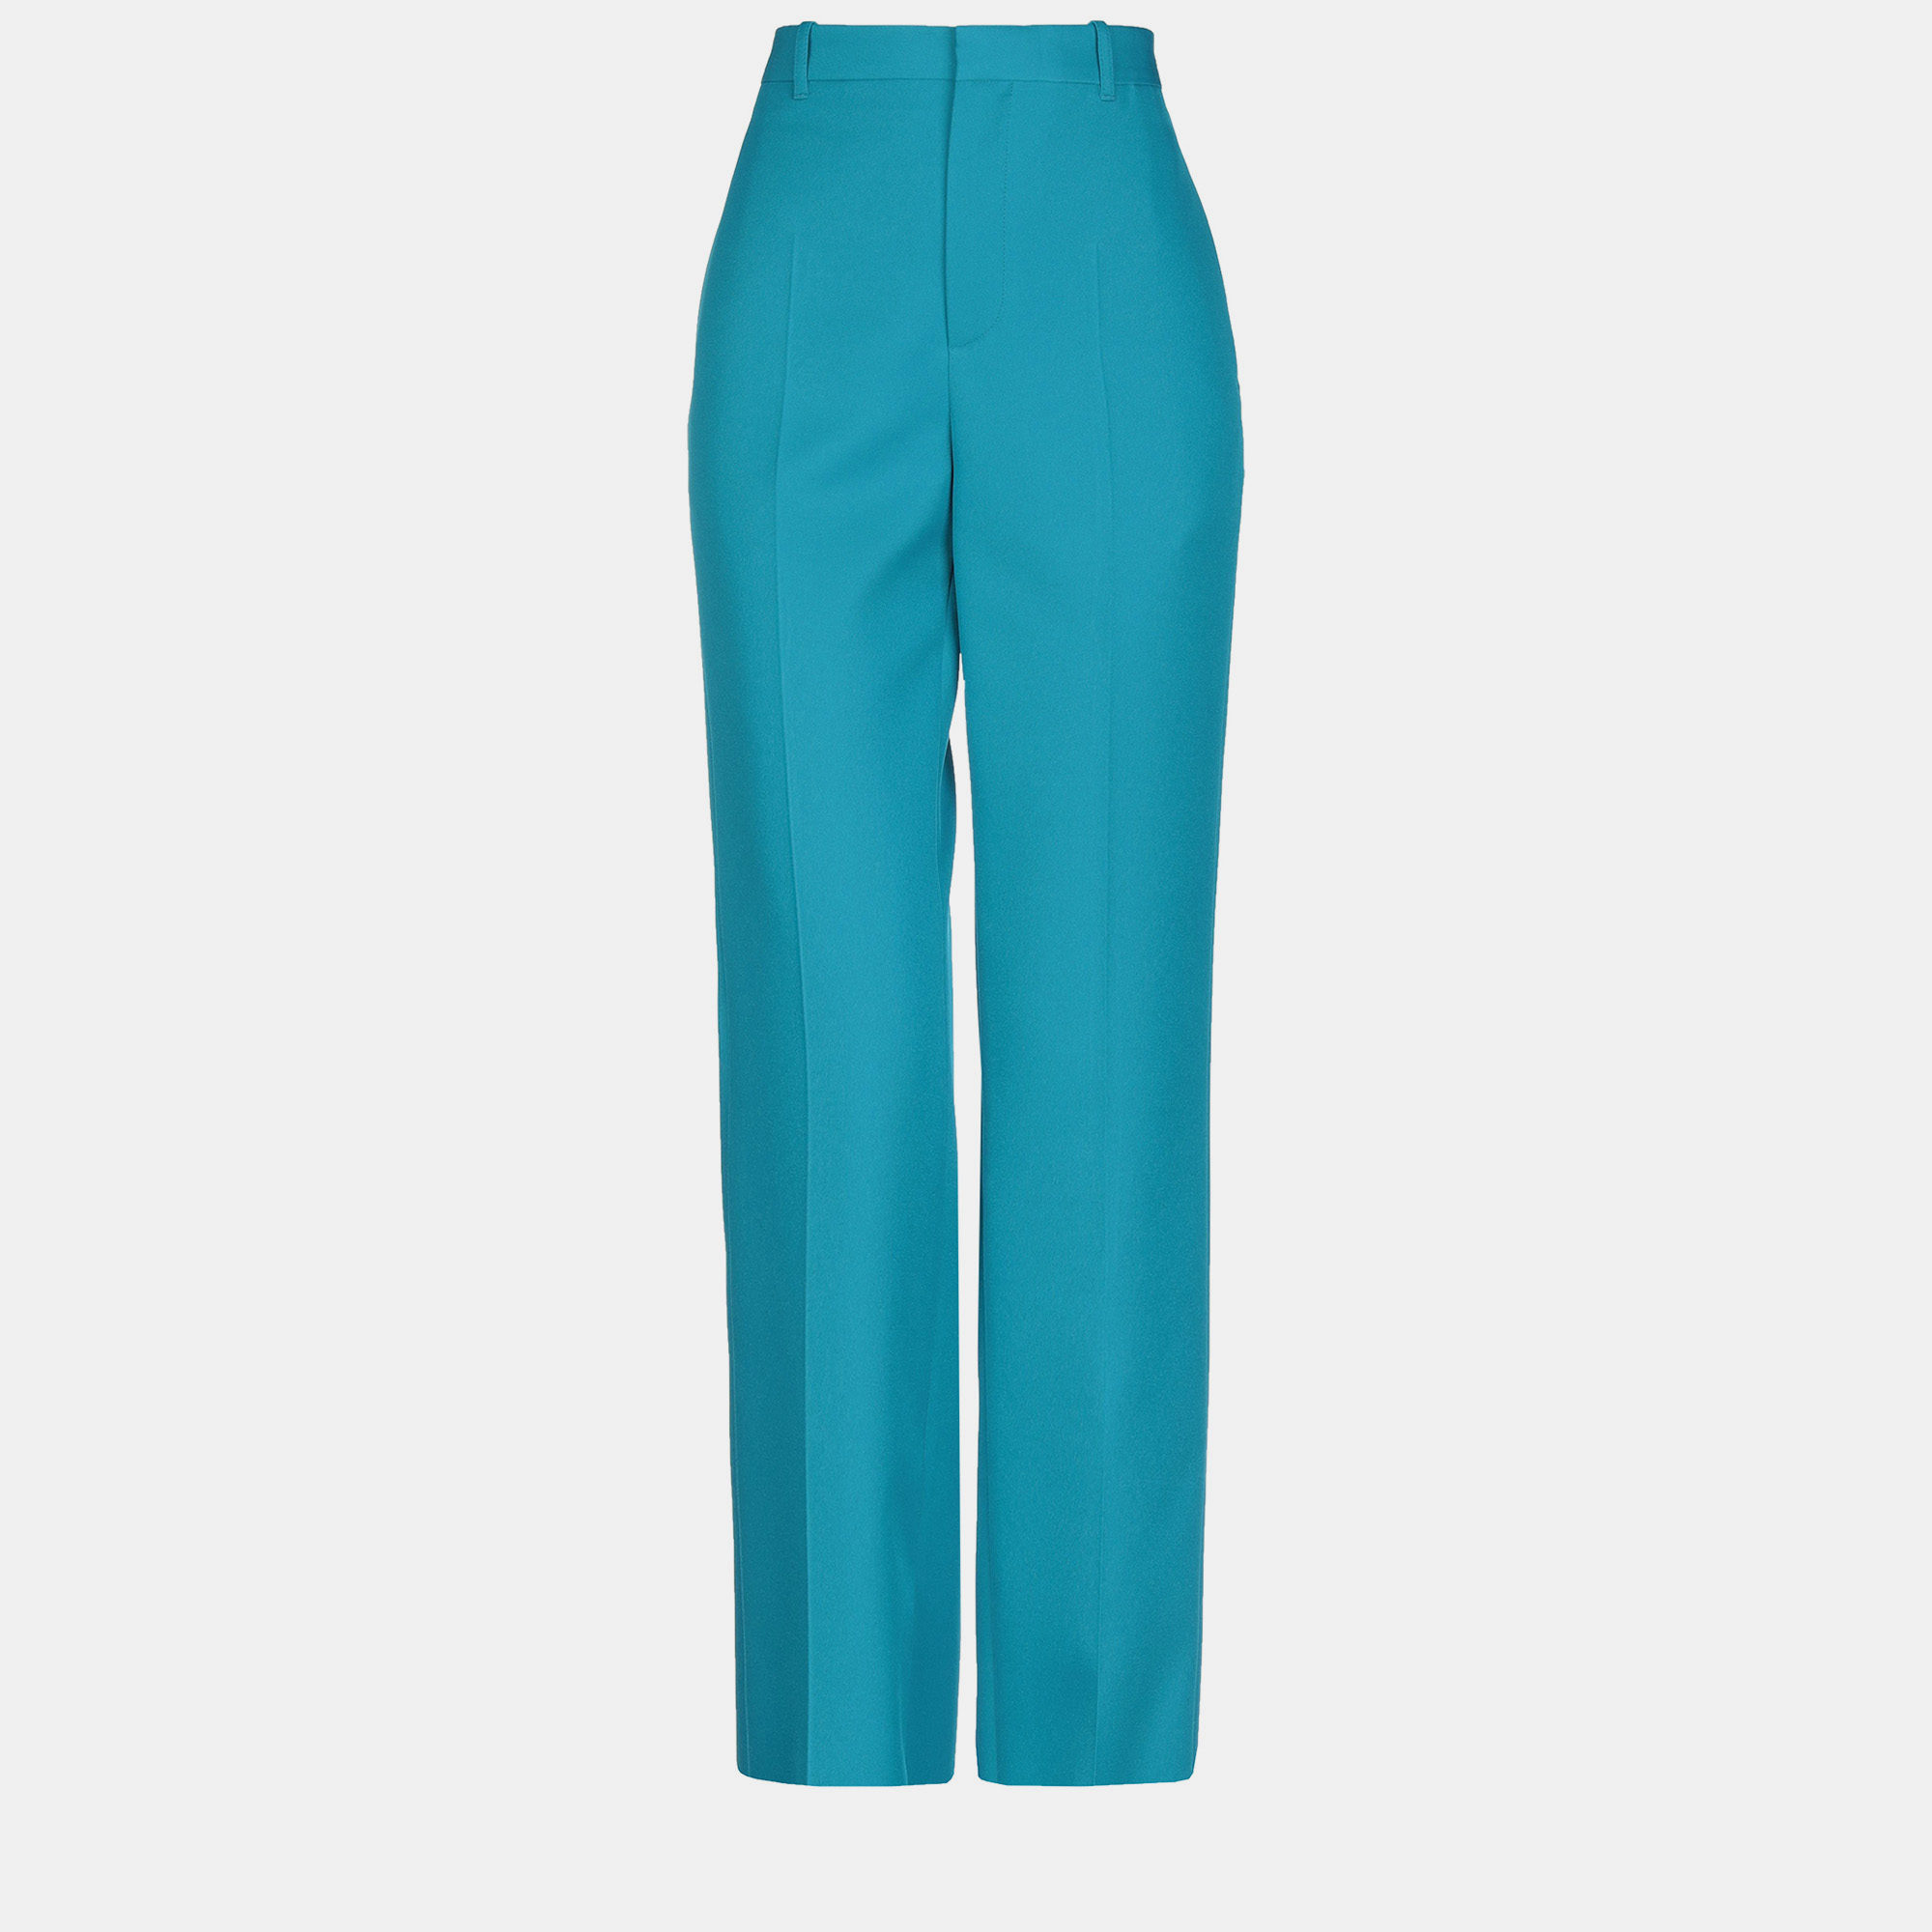 Balenciaga polyester pants 36